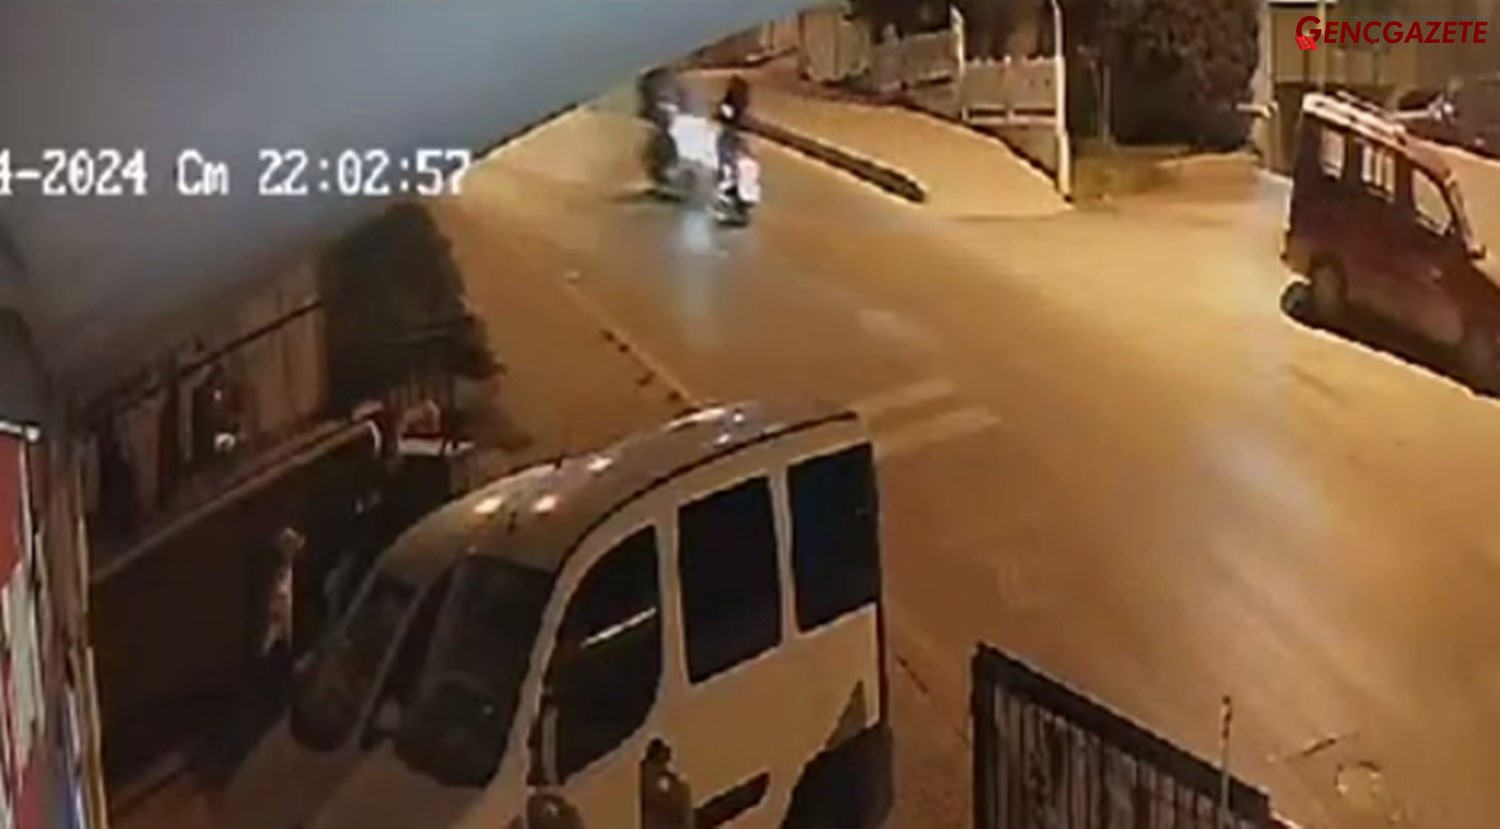 Genç Gazete Motosikletler Kafa Kafaya Çarpıştı, Kamera Kaydetti (3)